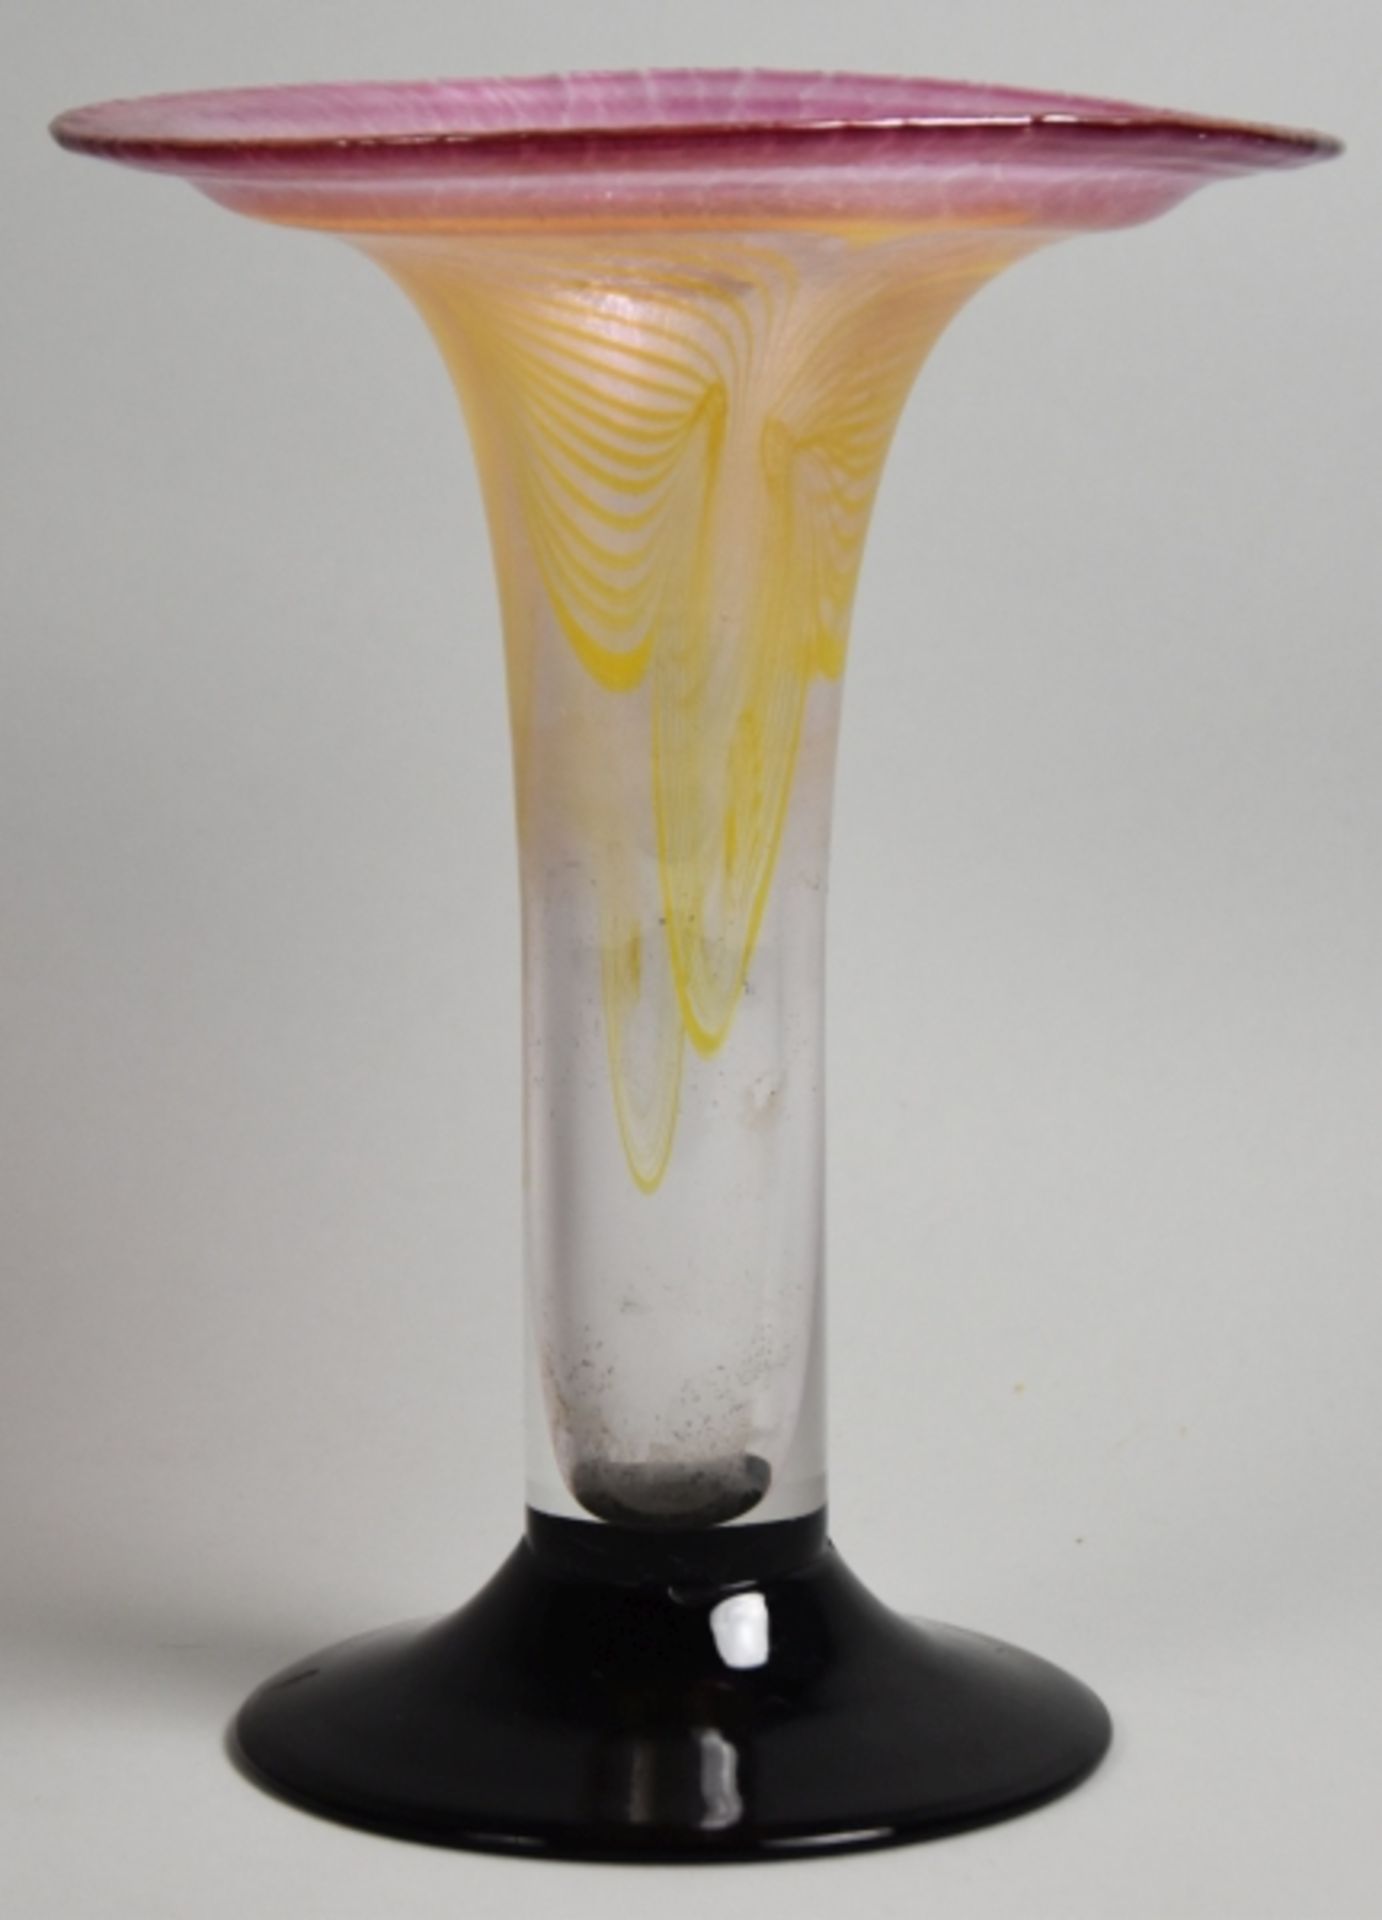 STUDIOGLAS EISCH Tulpenform mit ausgestelltem Rand, eingeschlossene gelbe Glasspiralen, rosa